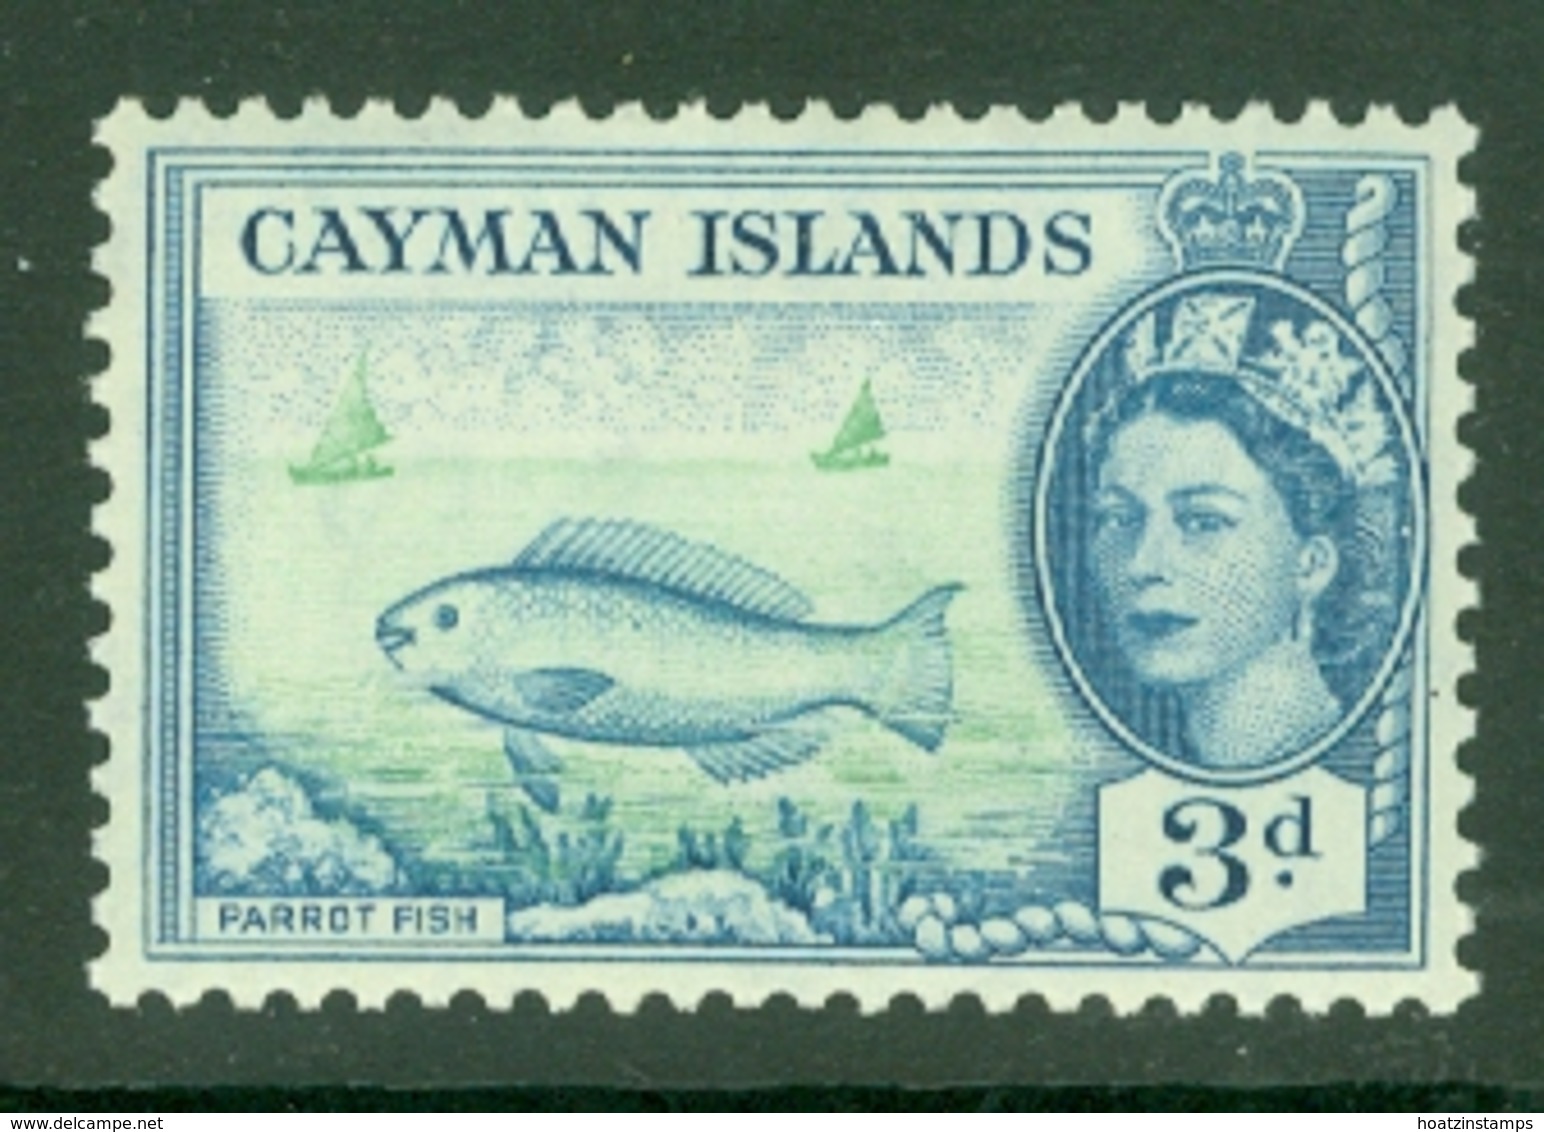 Cayman Islands: 1953/62   QE II - Pictorial   SG154   3d     MNH - Kaimaninseln